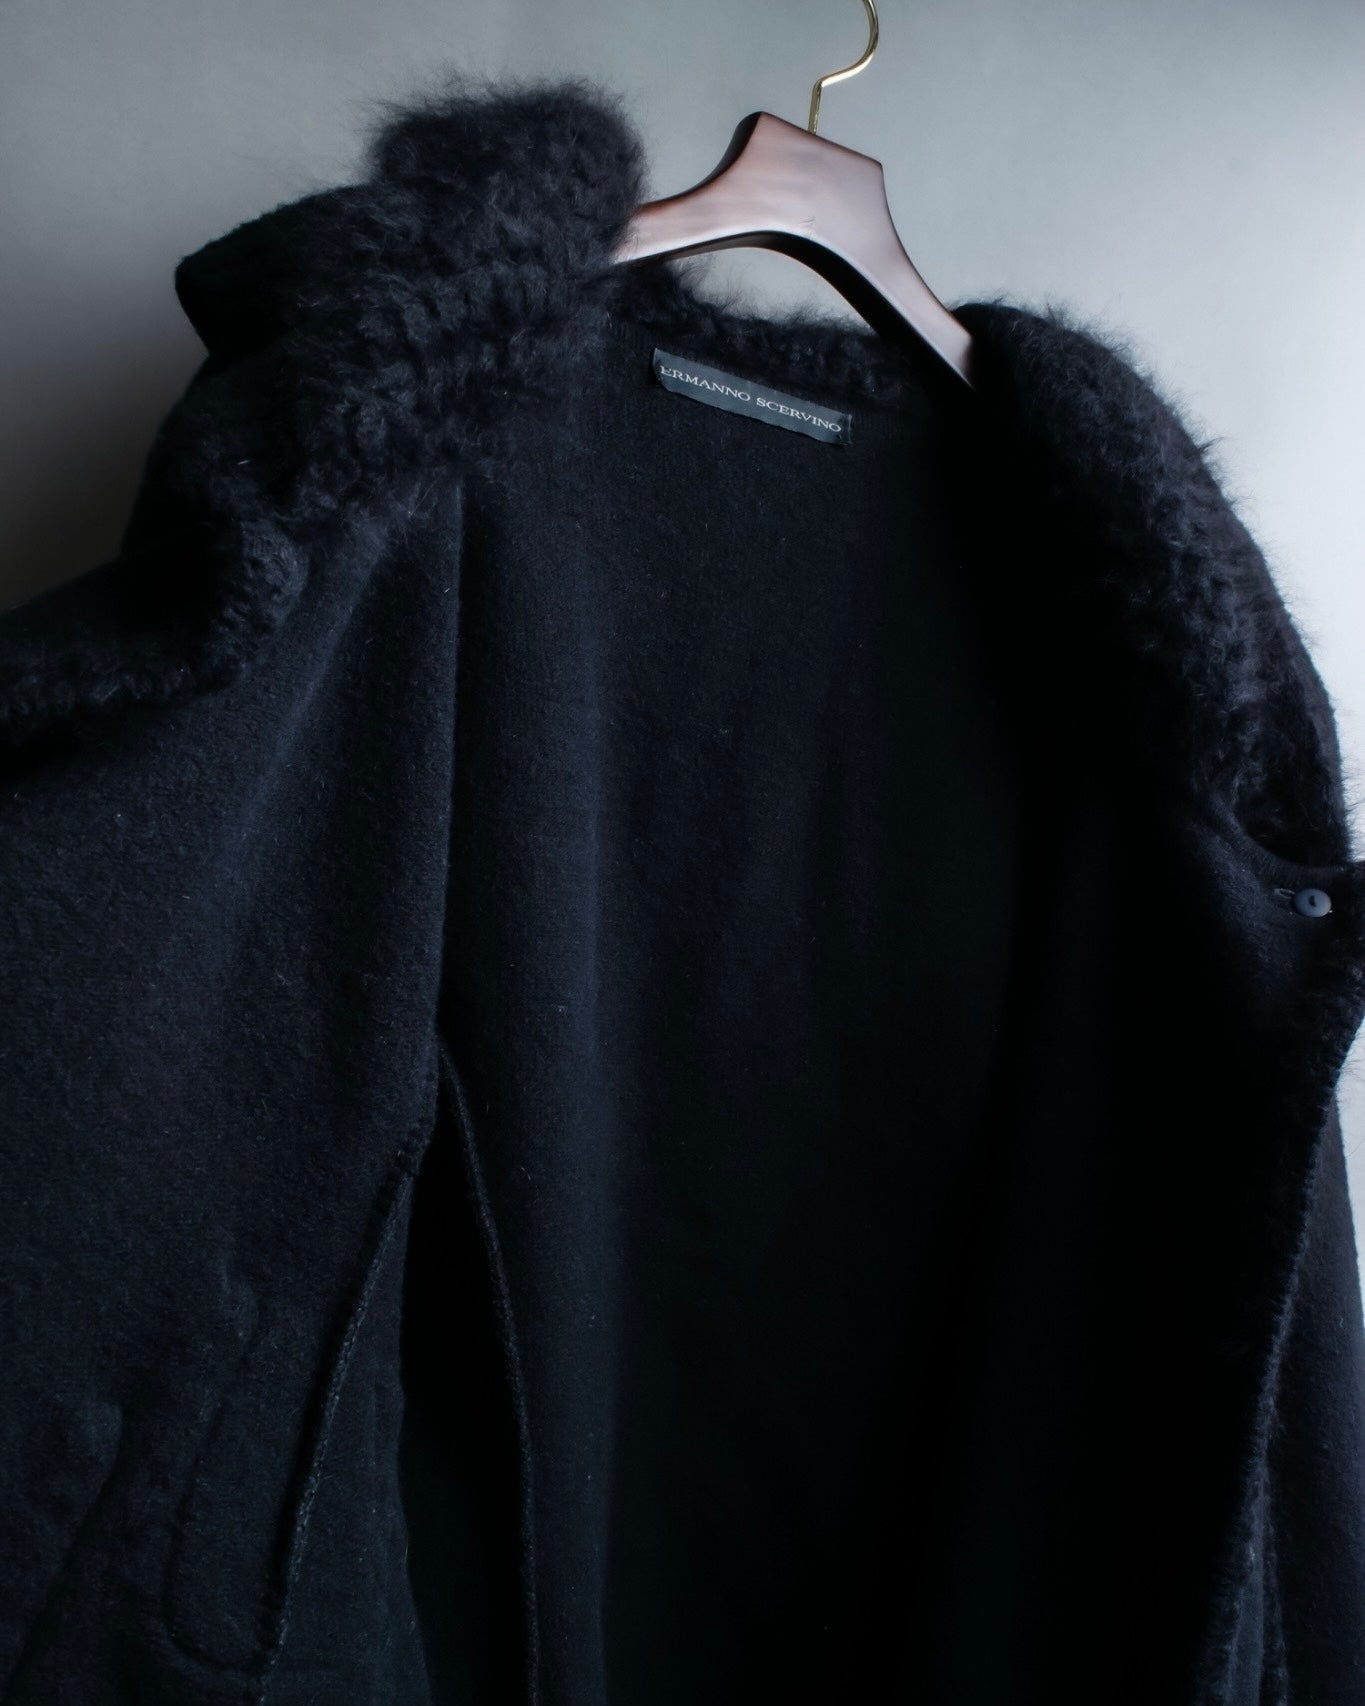 "Ermanno Scervino" Angora blend cardigan design jacket